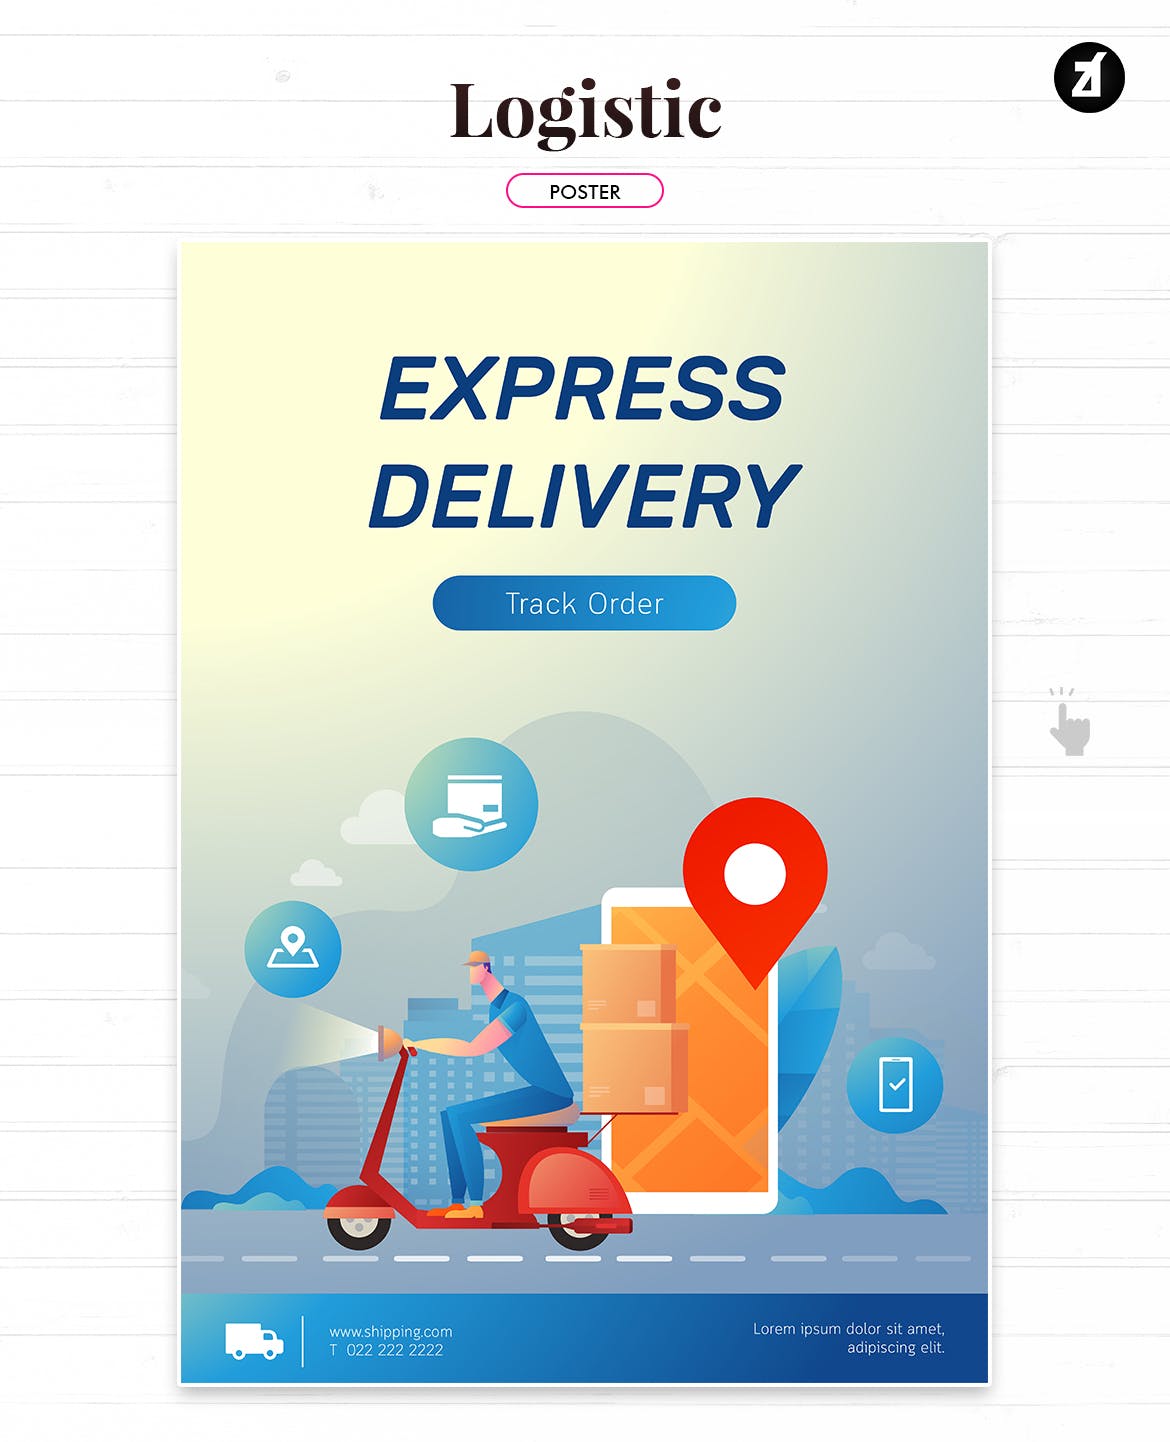 物流配送主题矢量插画设计素材 Logistic and delivery illustration with layout插图(2)